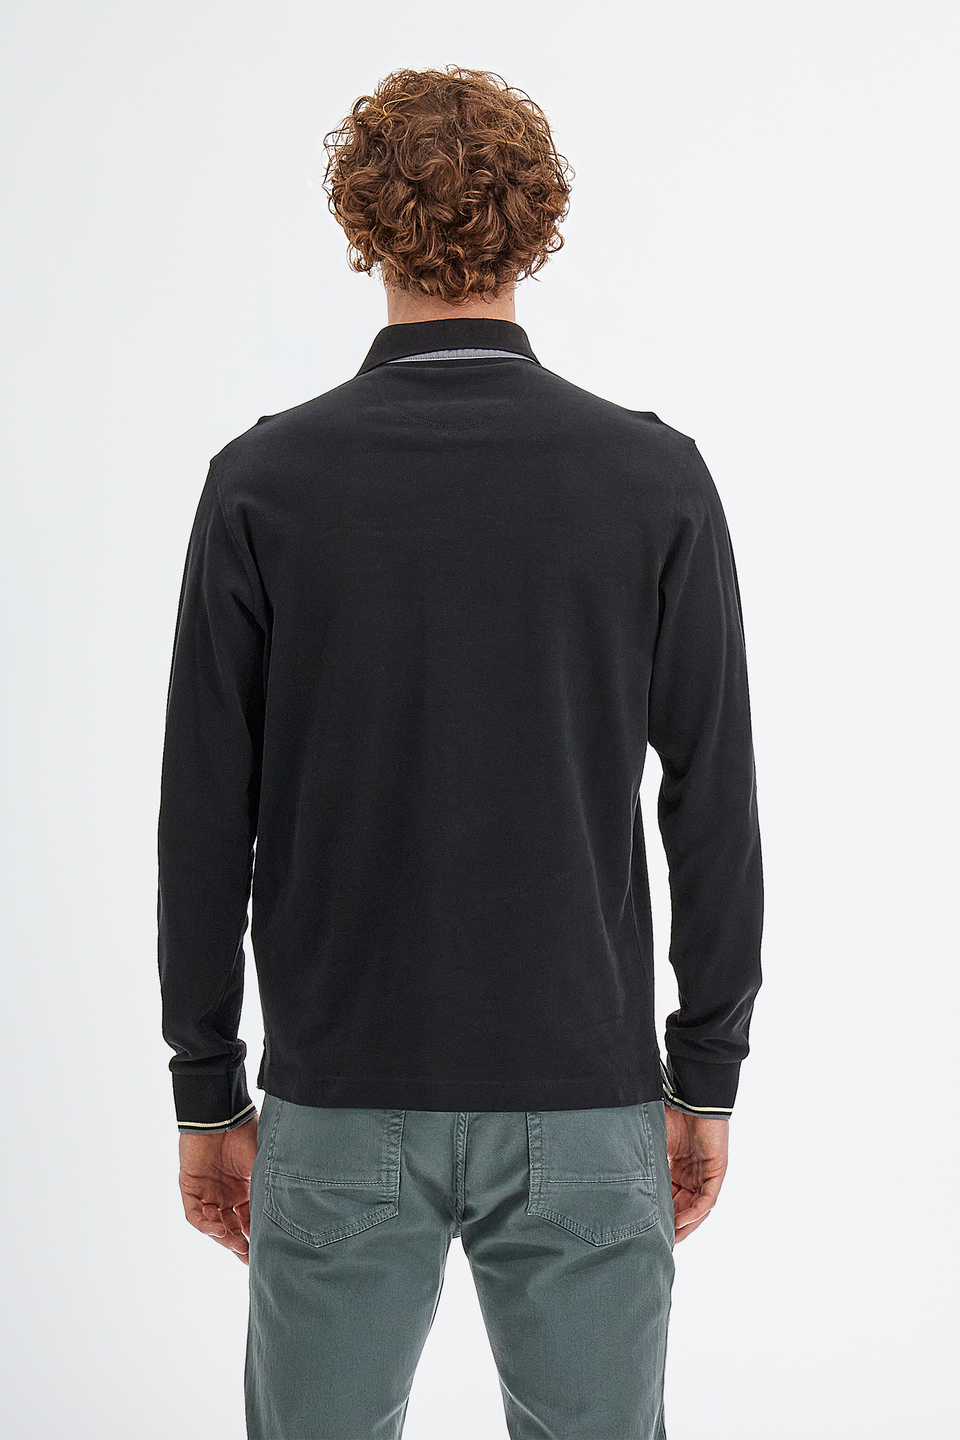 Polo de hombre en algodón jersey manga larga slim fit | La Martina - Official Online Shop